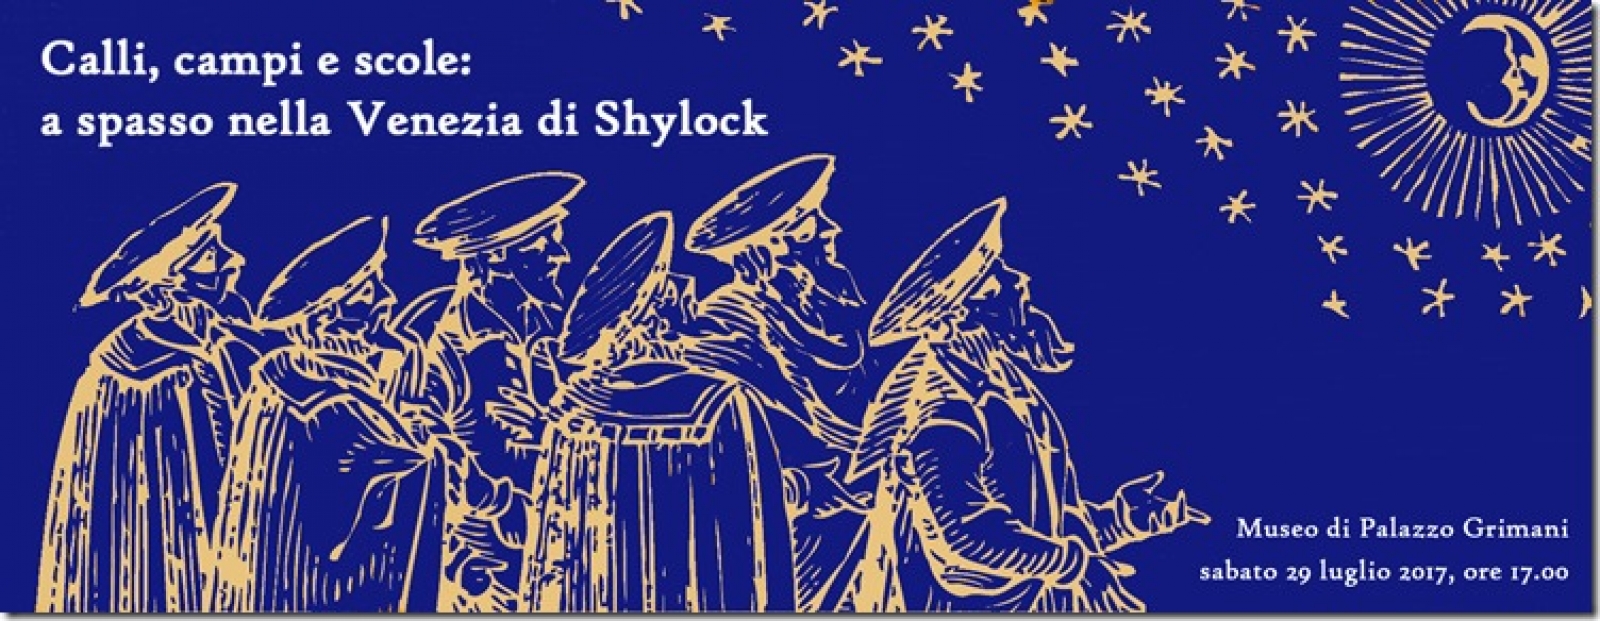 Manifesto del concerto "Calli, campi e scole: a spasso nella Venezia di Shylock"